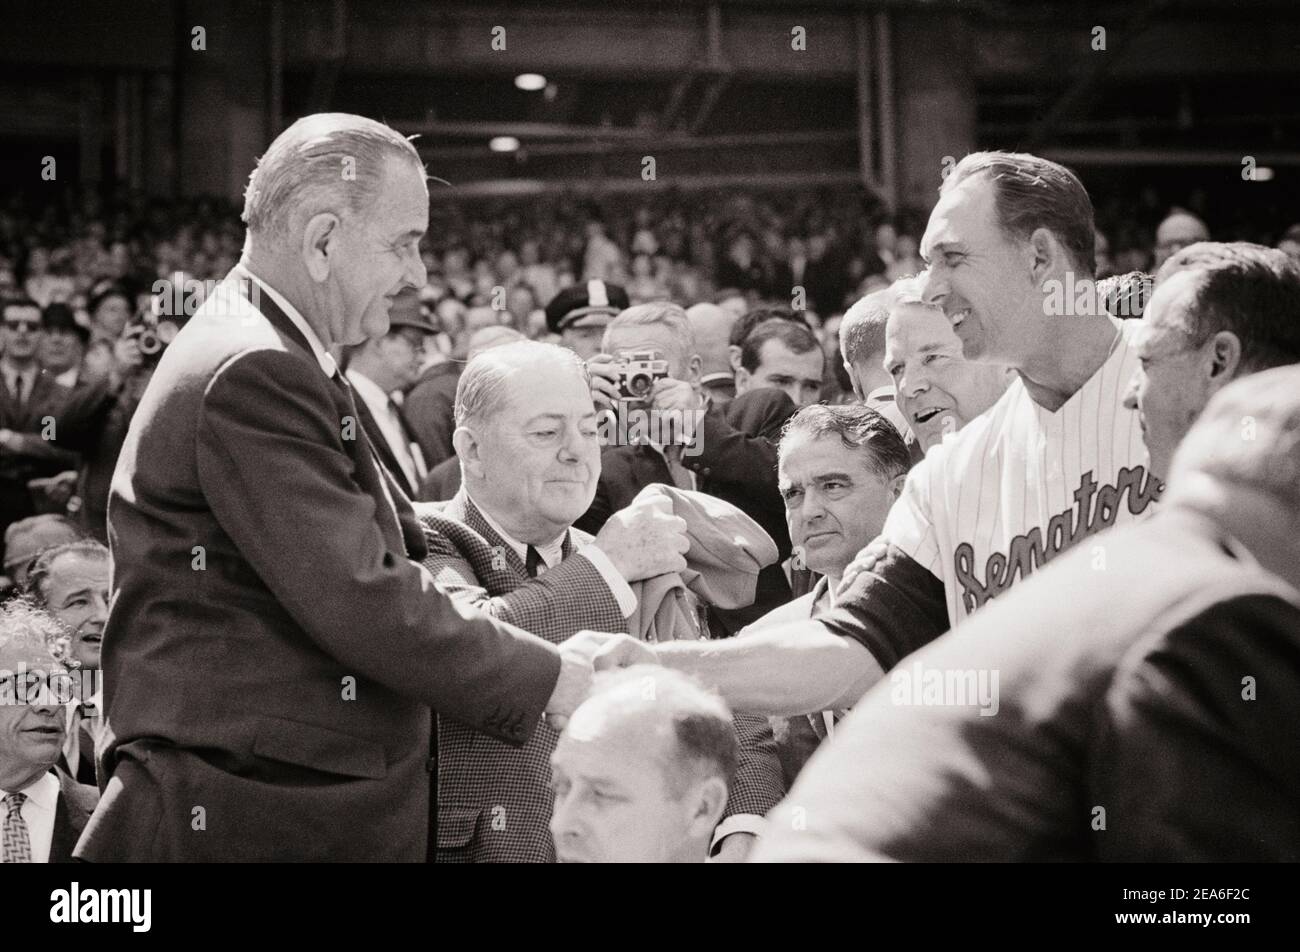 Le jour d'ouverture du match de baseball, Lyndon B. Johnson se lance. ÉTATS-UNIS. 12 avril 1965 Banque D'Images